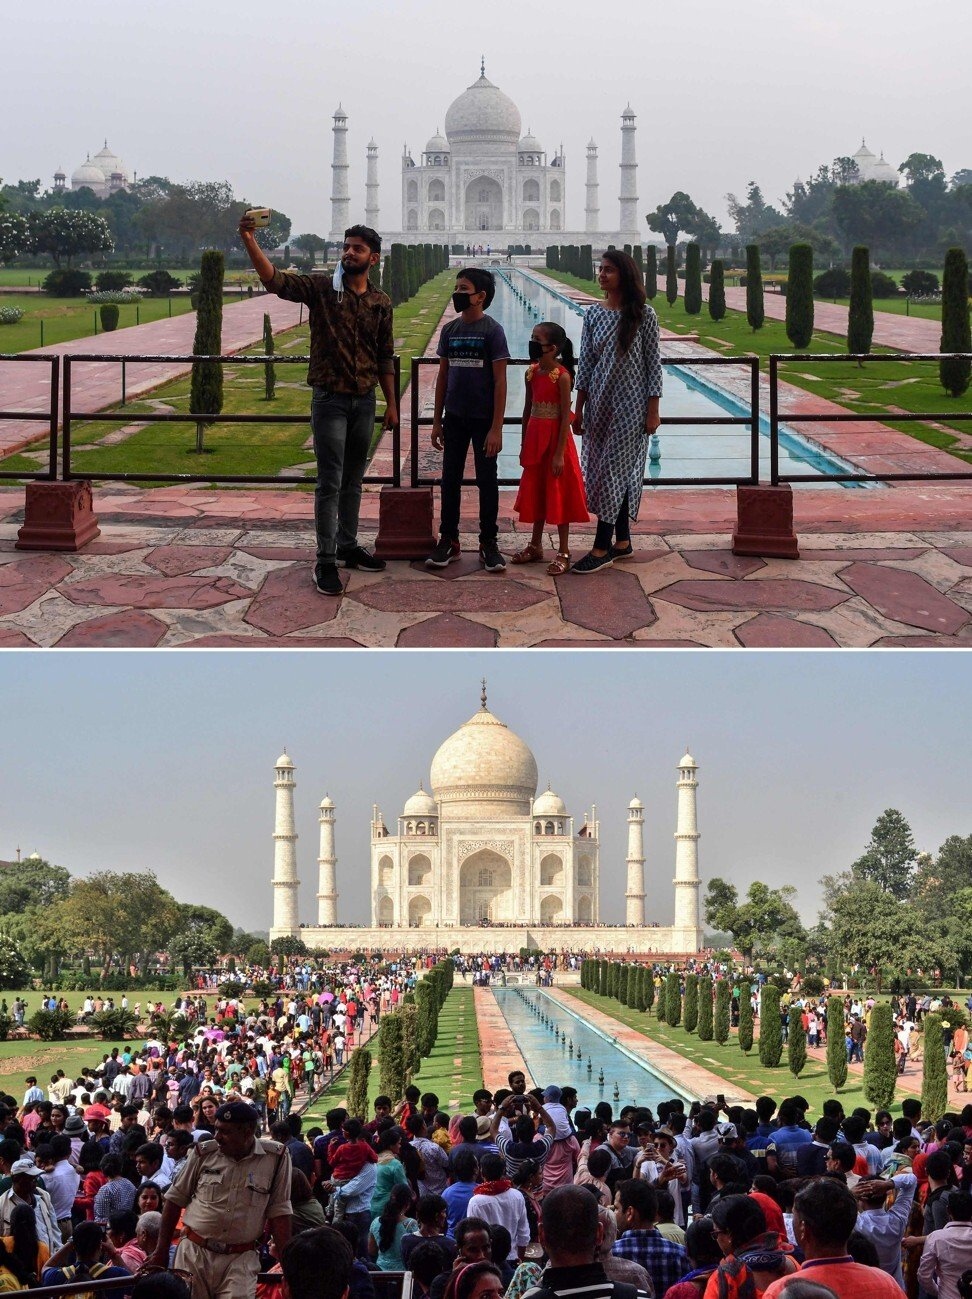 Khám phá những điều bí ẩn xung quanh ngồi đền thiên Taj Mahal  VIETRAVEL   Vietravel